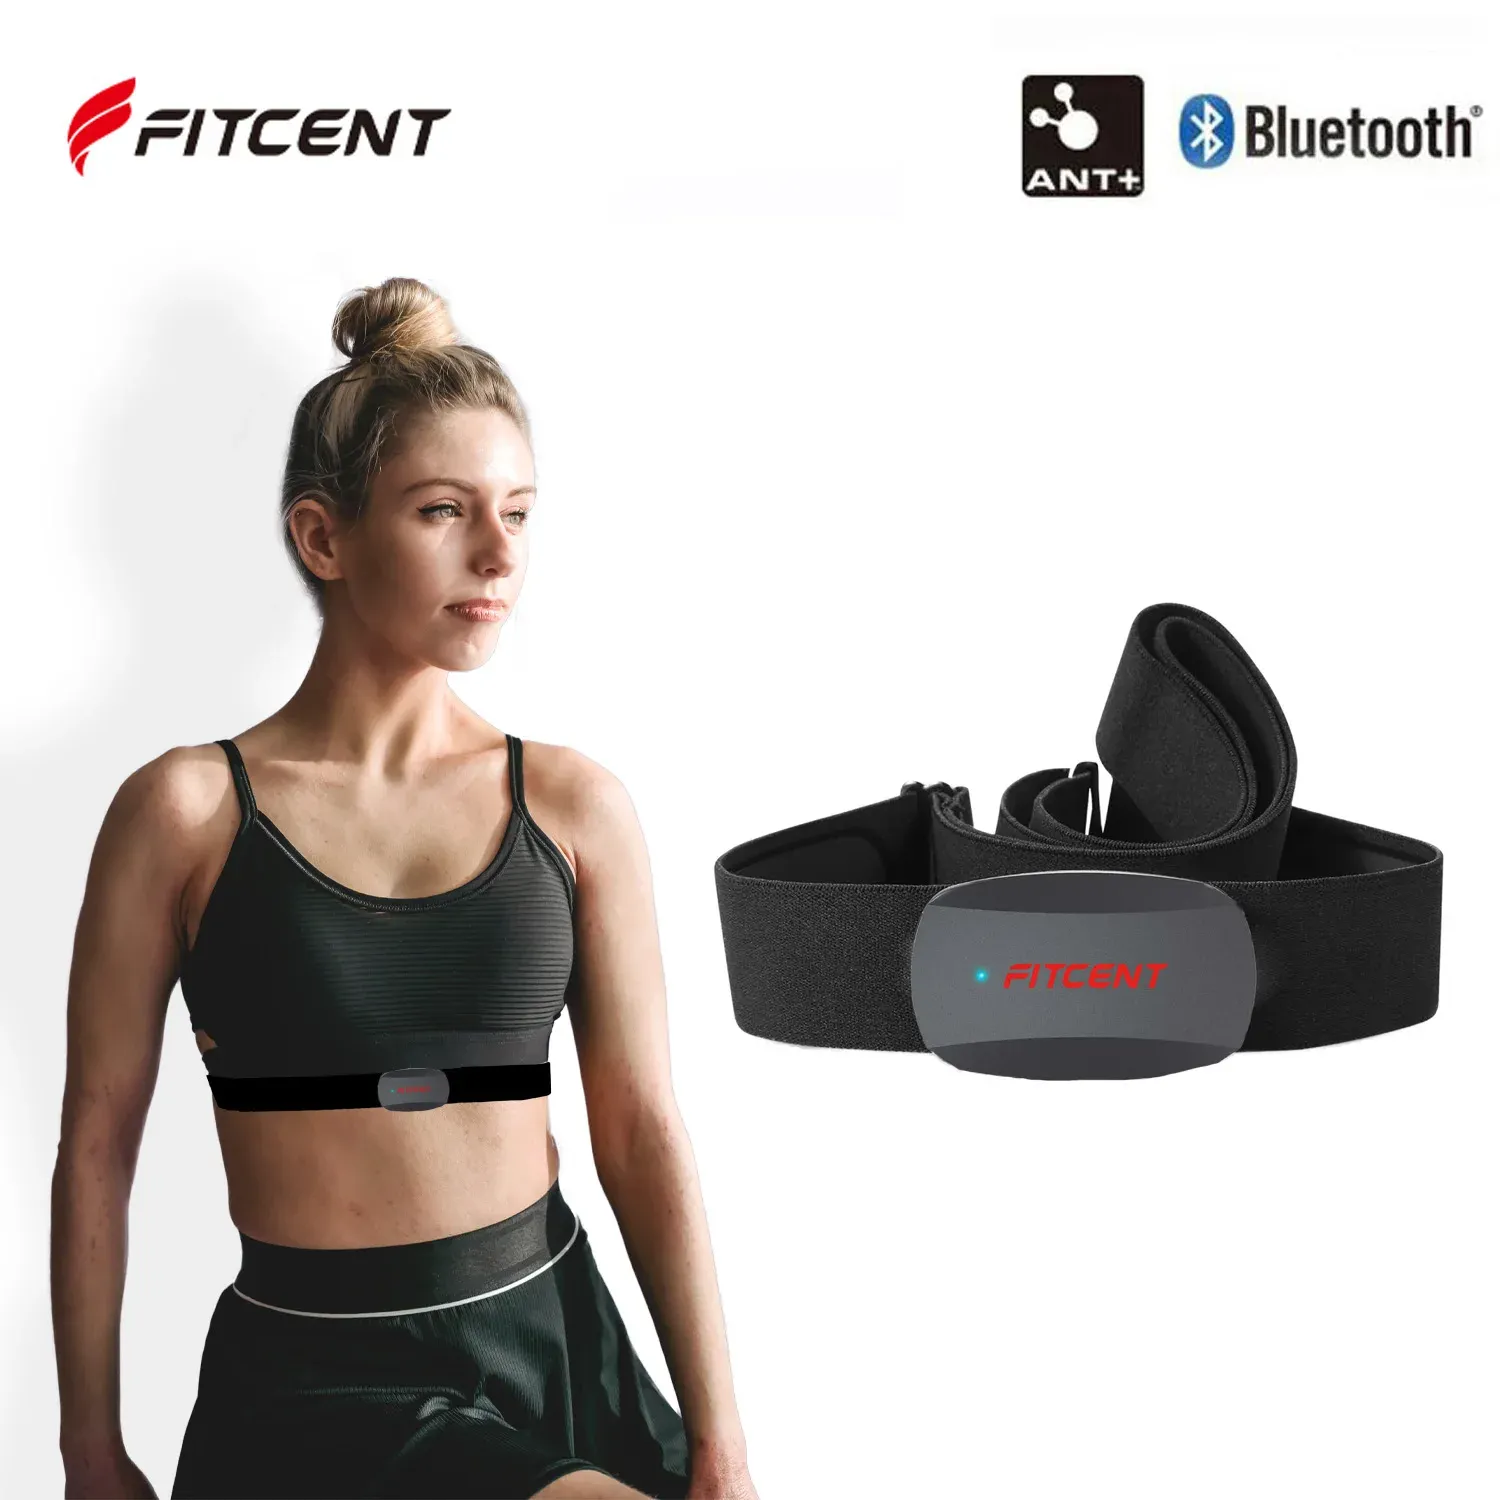 المعدات Fitcent معدل ضربات القلب حزام Bluetooth Ant Hr Monitor حزام الصدر ل Peloton Polar Garmin Bike Computer Sports Srava DDP Yoga